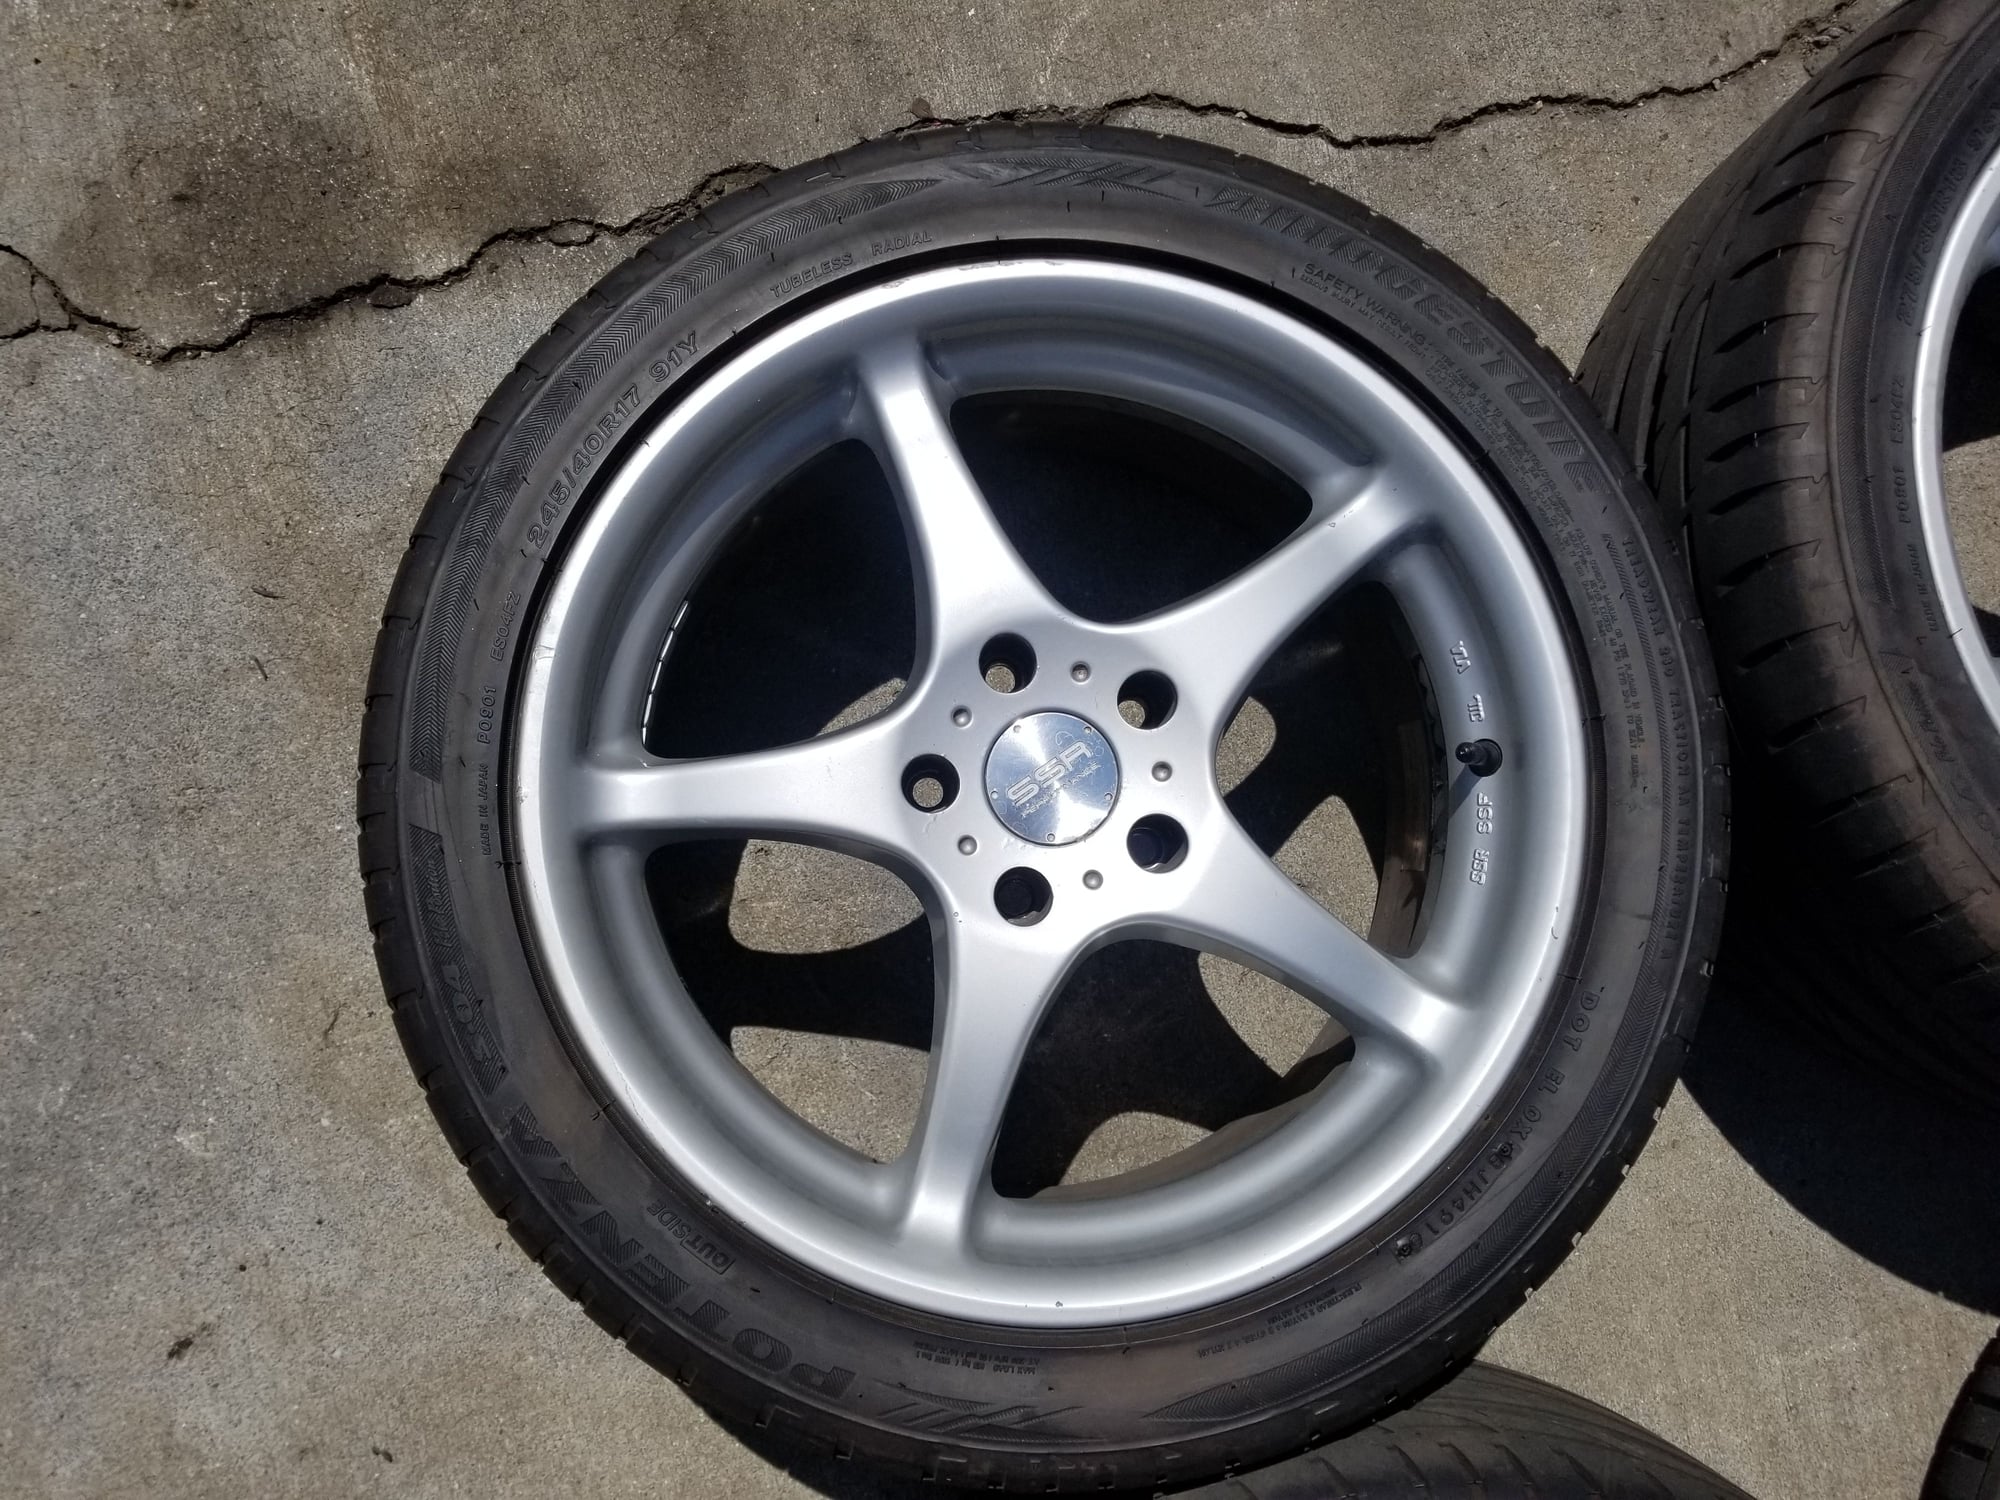 Wheels and Tires/Axles - SSR Integral wheels 17x8F 18x9R w/ new Bridgestone Potenza S04 tires - Used - Morristown, TN 37814, United States